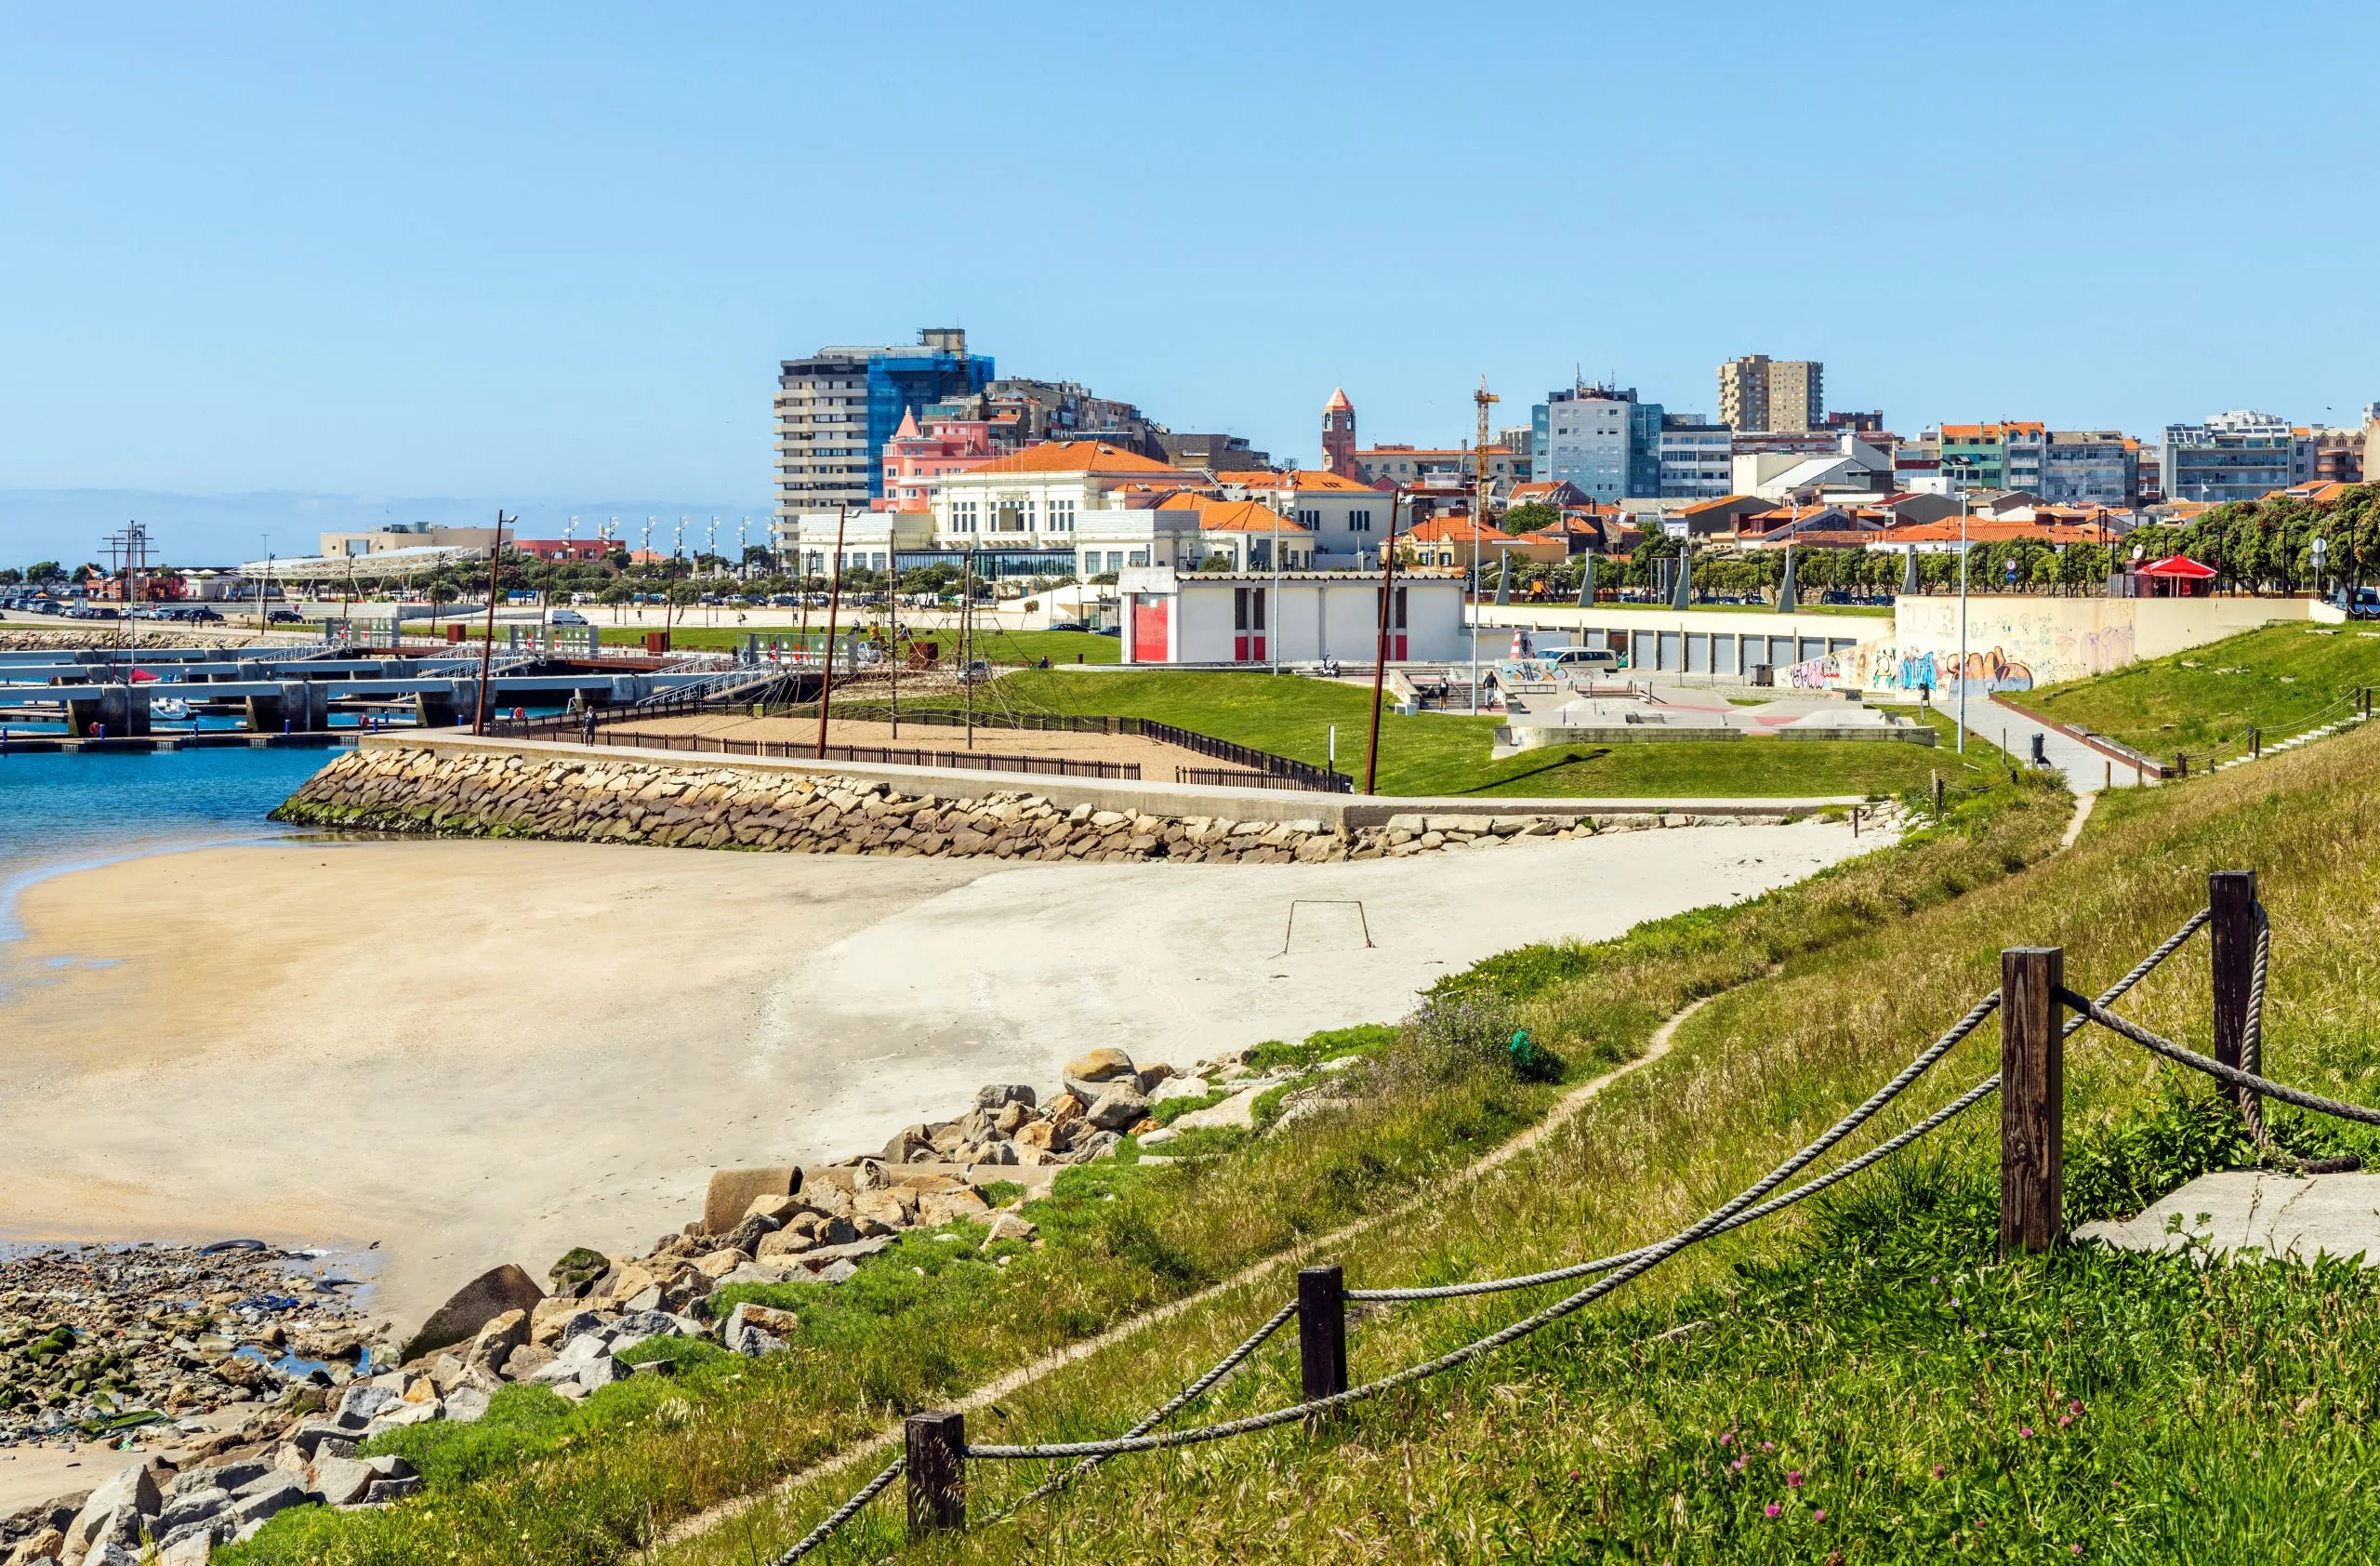 Cityscape of Povoa de Varzim, Porto district, Portugal